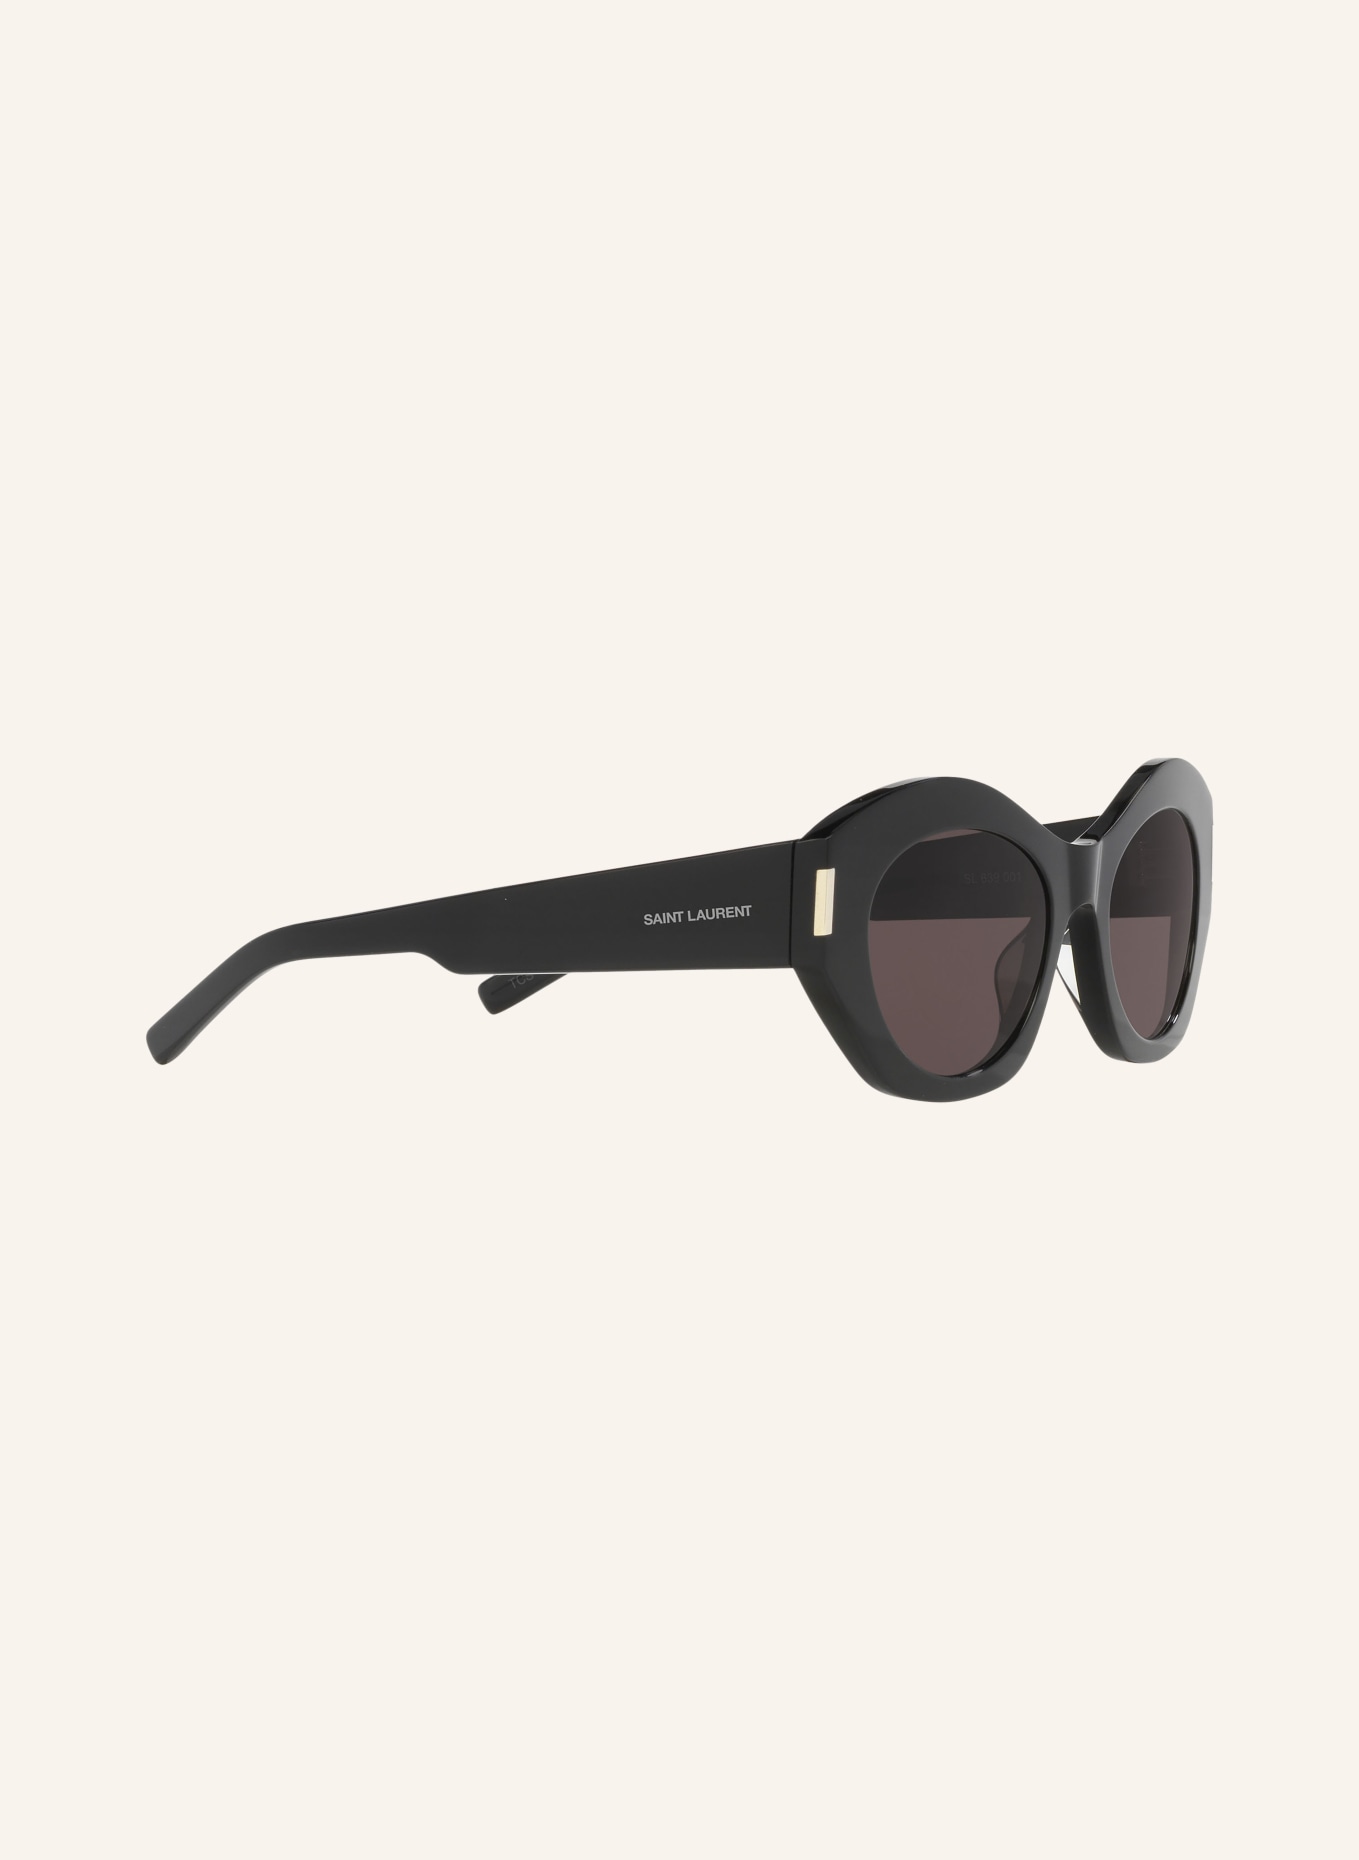 SAINT LAURENT Sunglasses SL 639, Color: 1100A1 - BLACK/GRAY (Image 3)